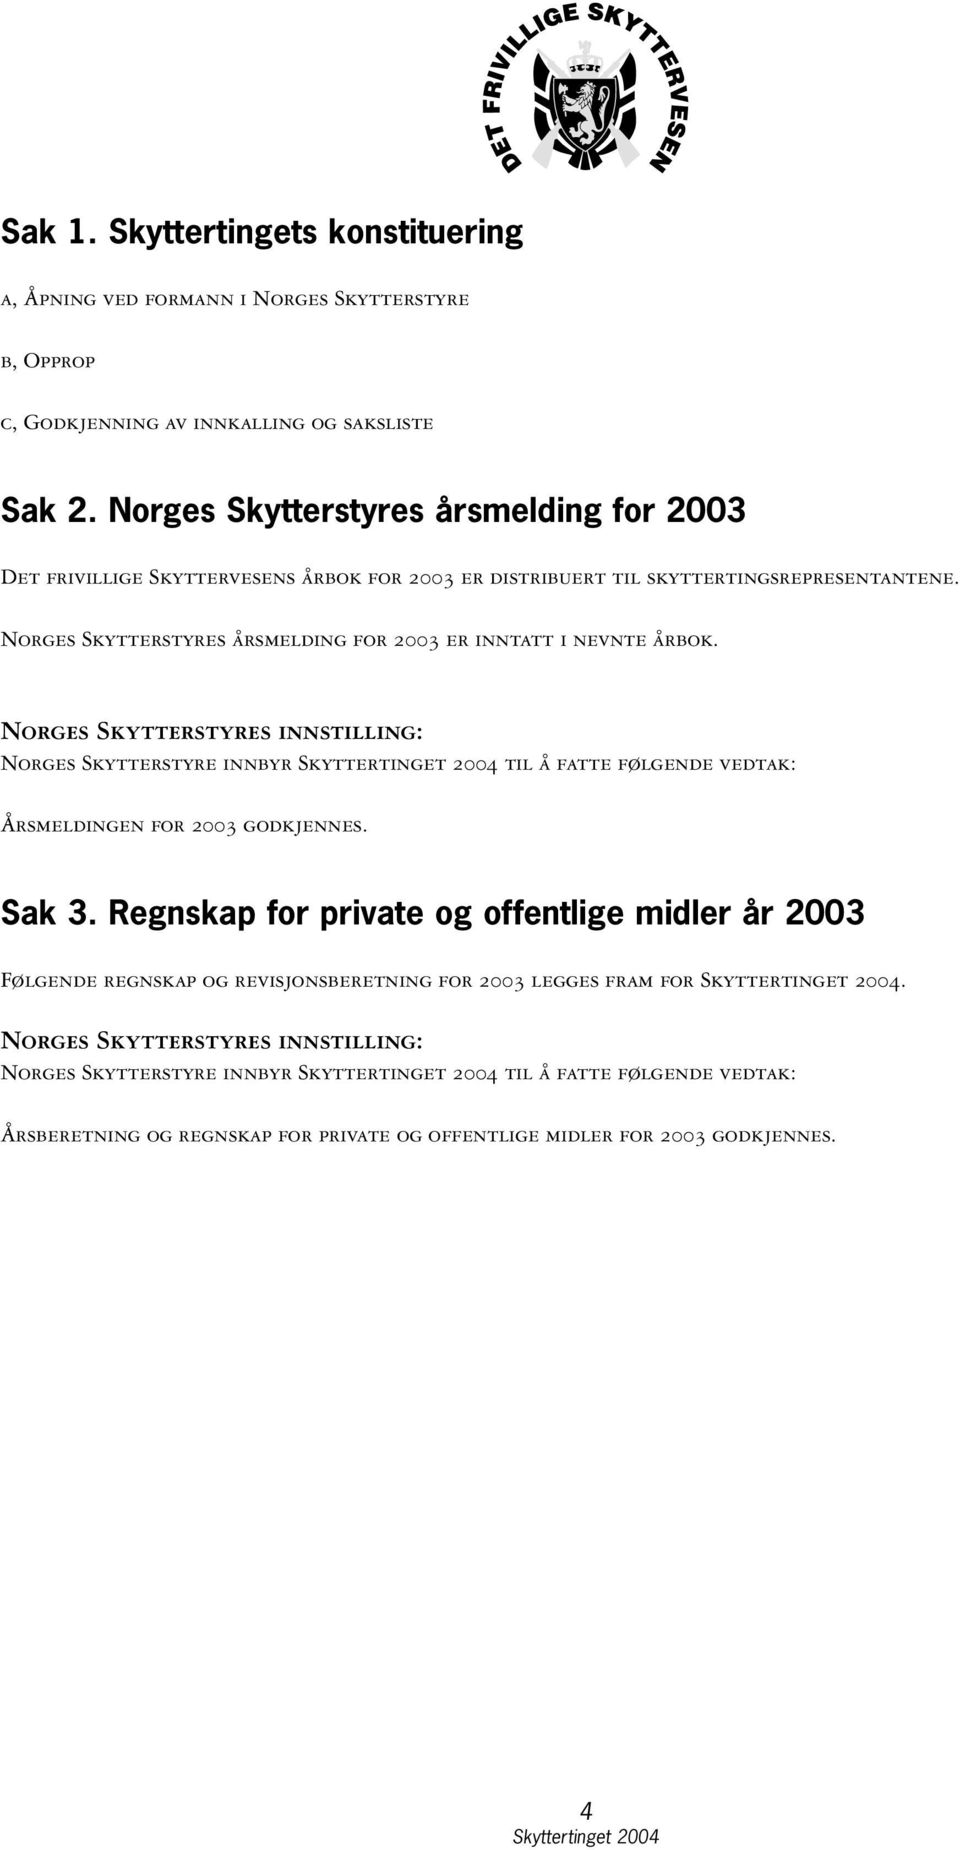 Norges Skytterstyres årsmelding for 2003 er inntatt i nevnte årbok.